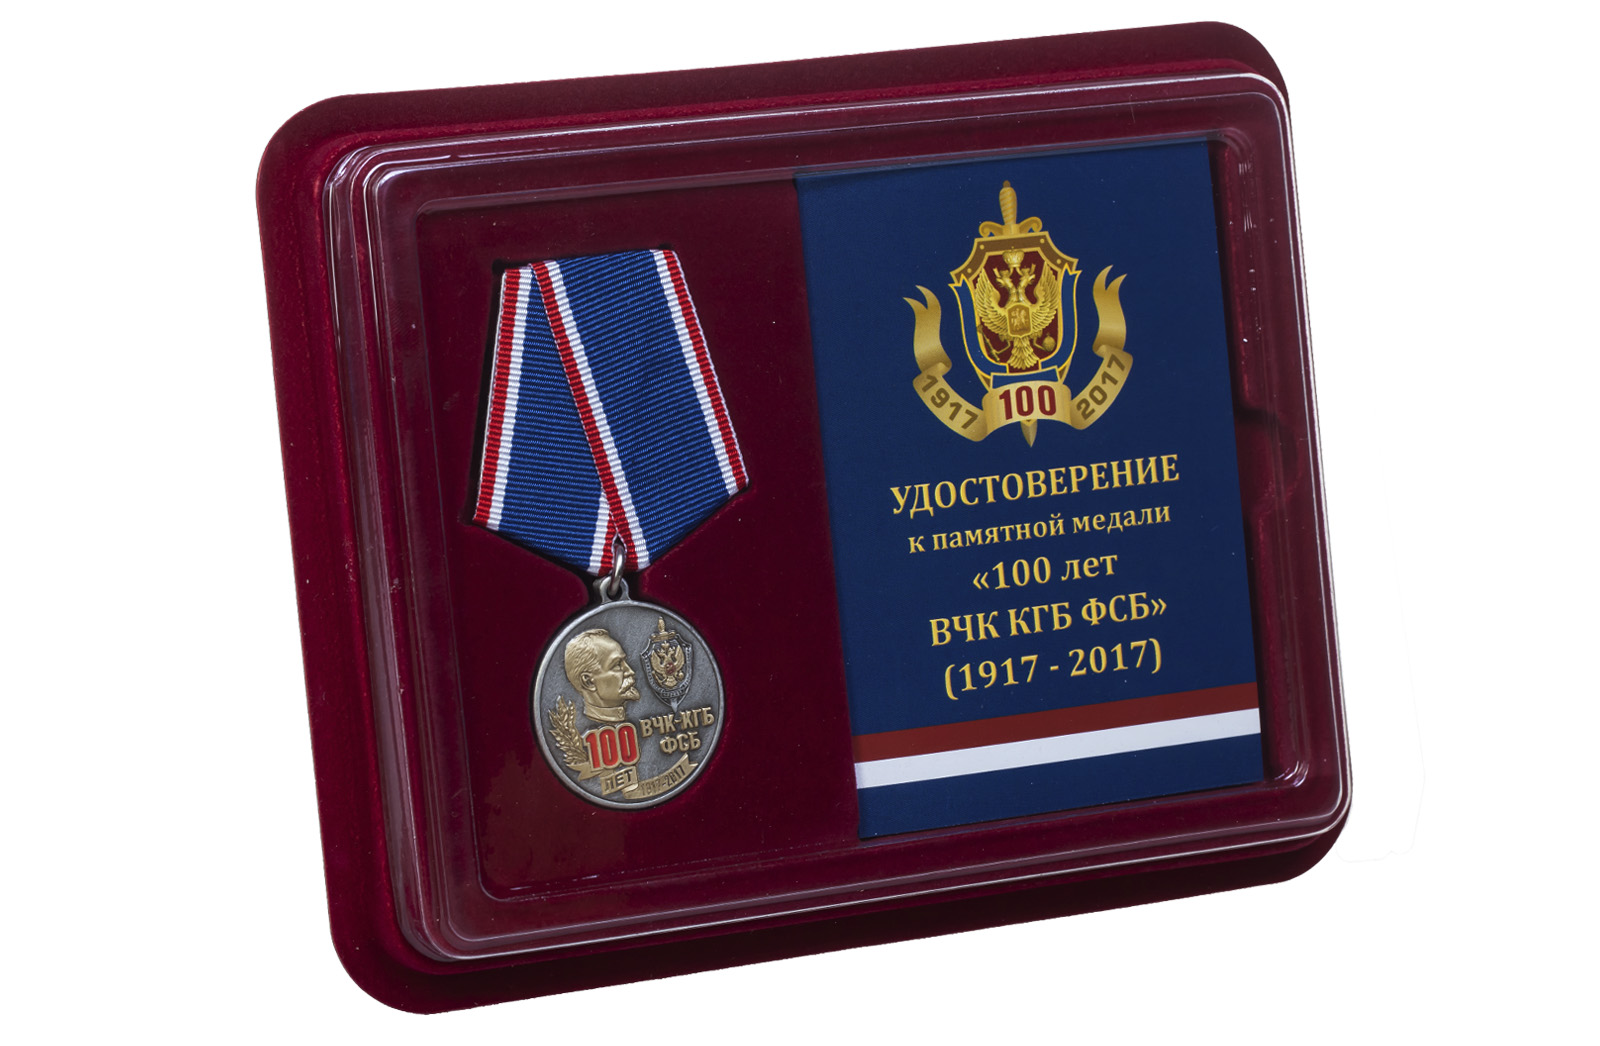 Медаль к 100-летию ВЧК-КГБ-ФСБ в наградном футляре